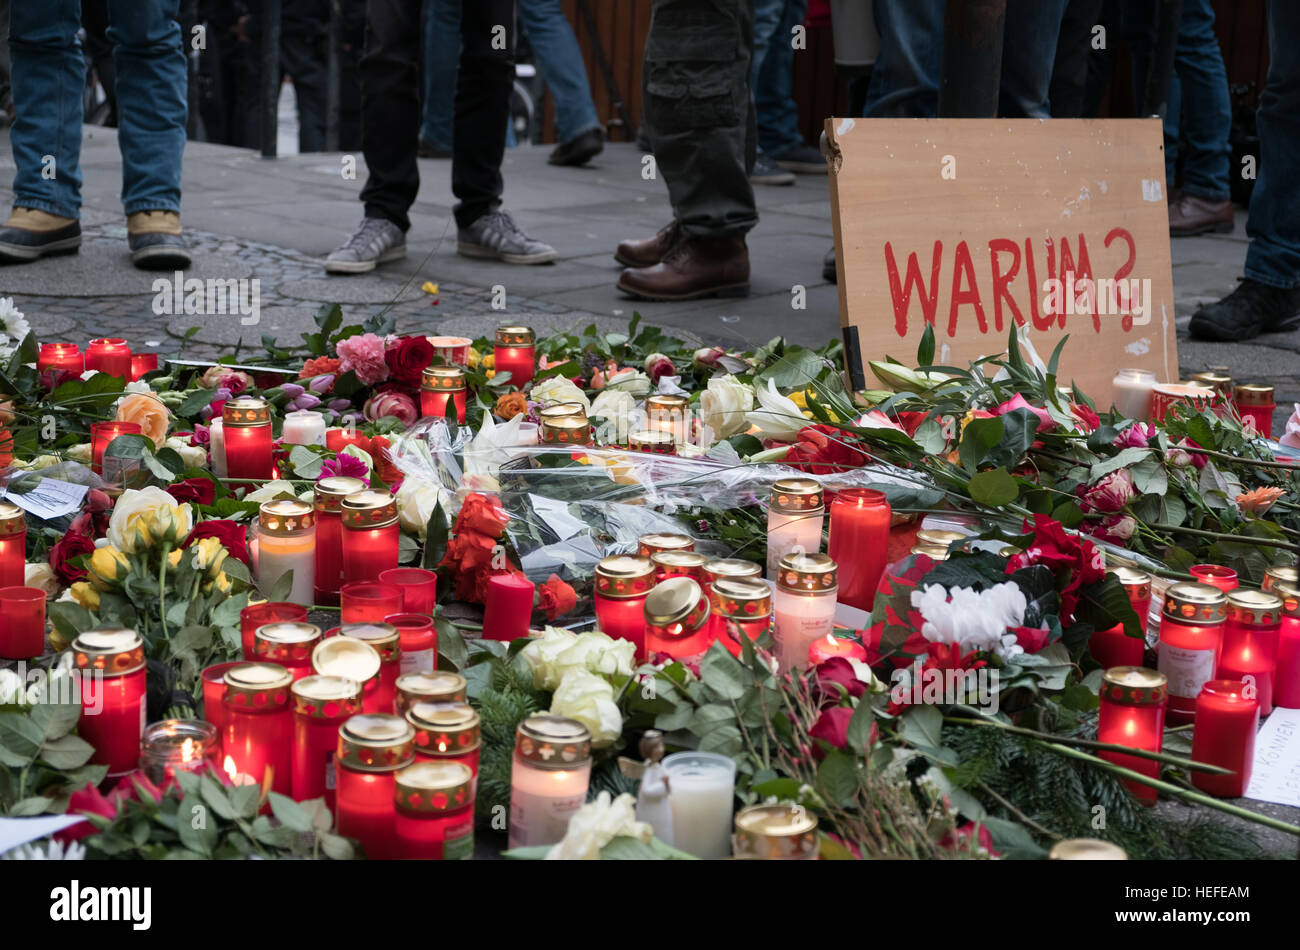 Les bougies, les fleurs et un signe avec le mot allemand 'Warum' (pourquoi) au marché de Noël à Berlin, le jour après l'attaque terroriste Banque D'Images